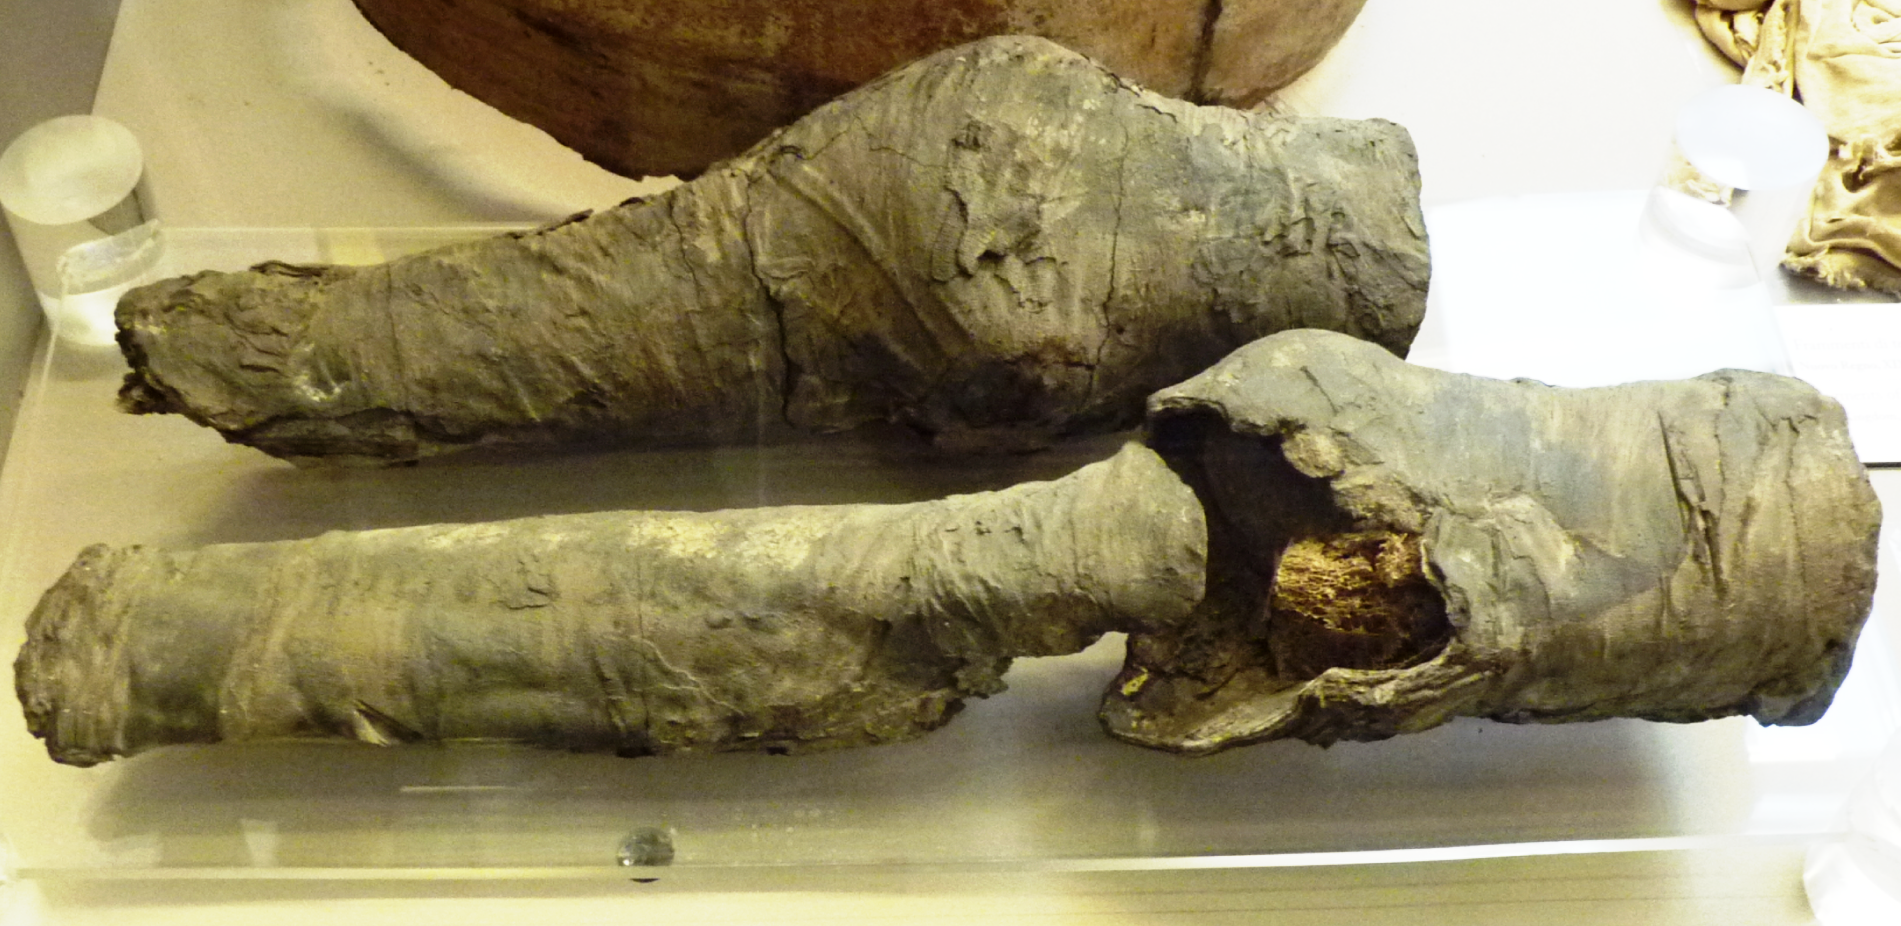 Ces fragments d'une paire de jambes momifiées sont exposés au musée des antiquités égyptiennes de Turin. On pense maintenant qu'il s'agit bien de reste de la momie de la favorite de Ramsès. © Joann Fletcher